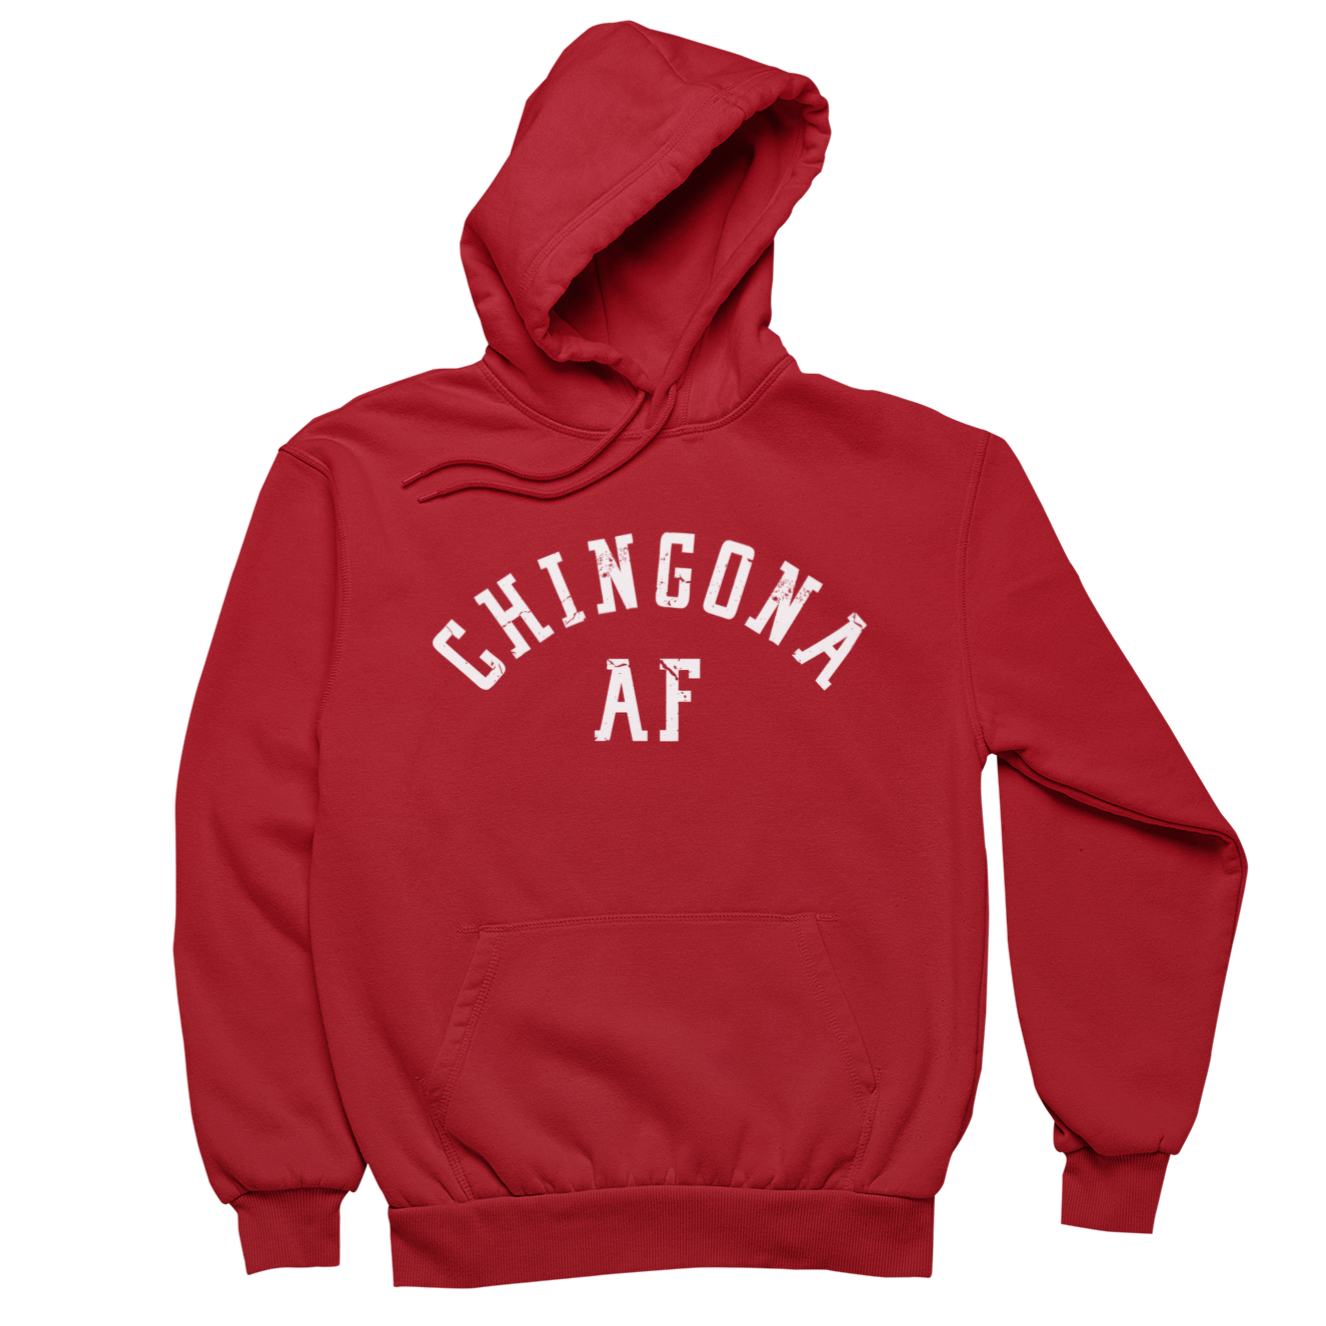 Chingona AF Women's  Hoodie Sweatshirt